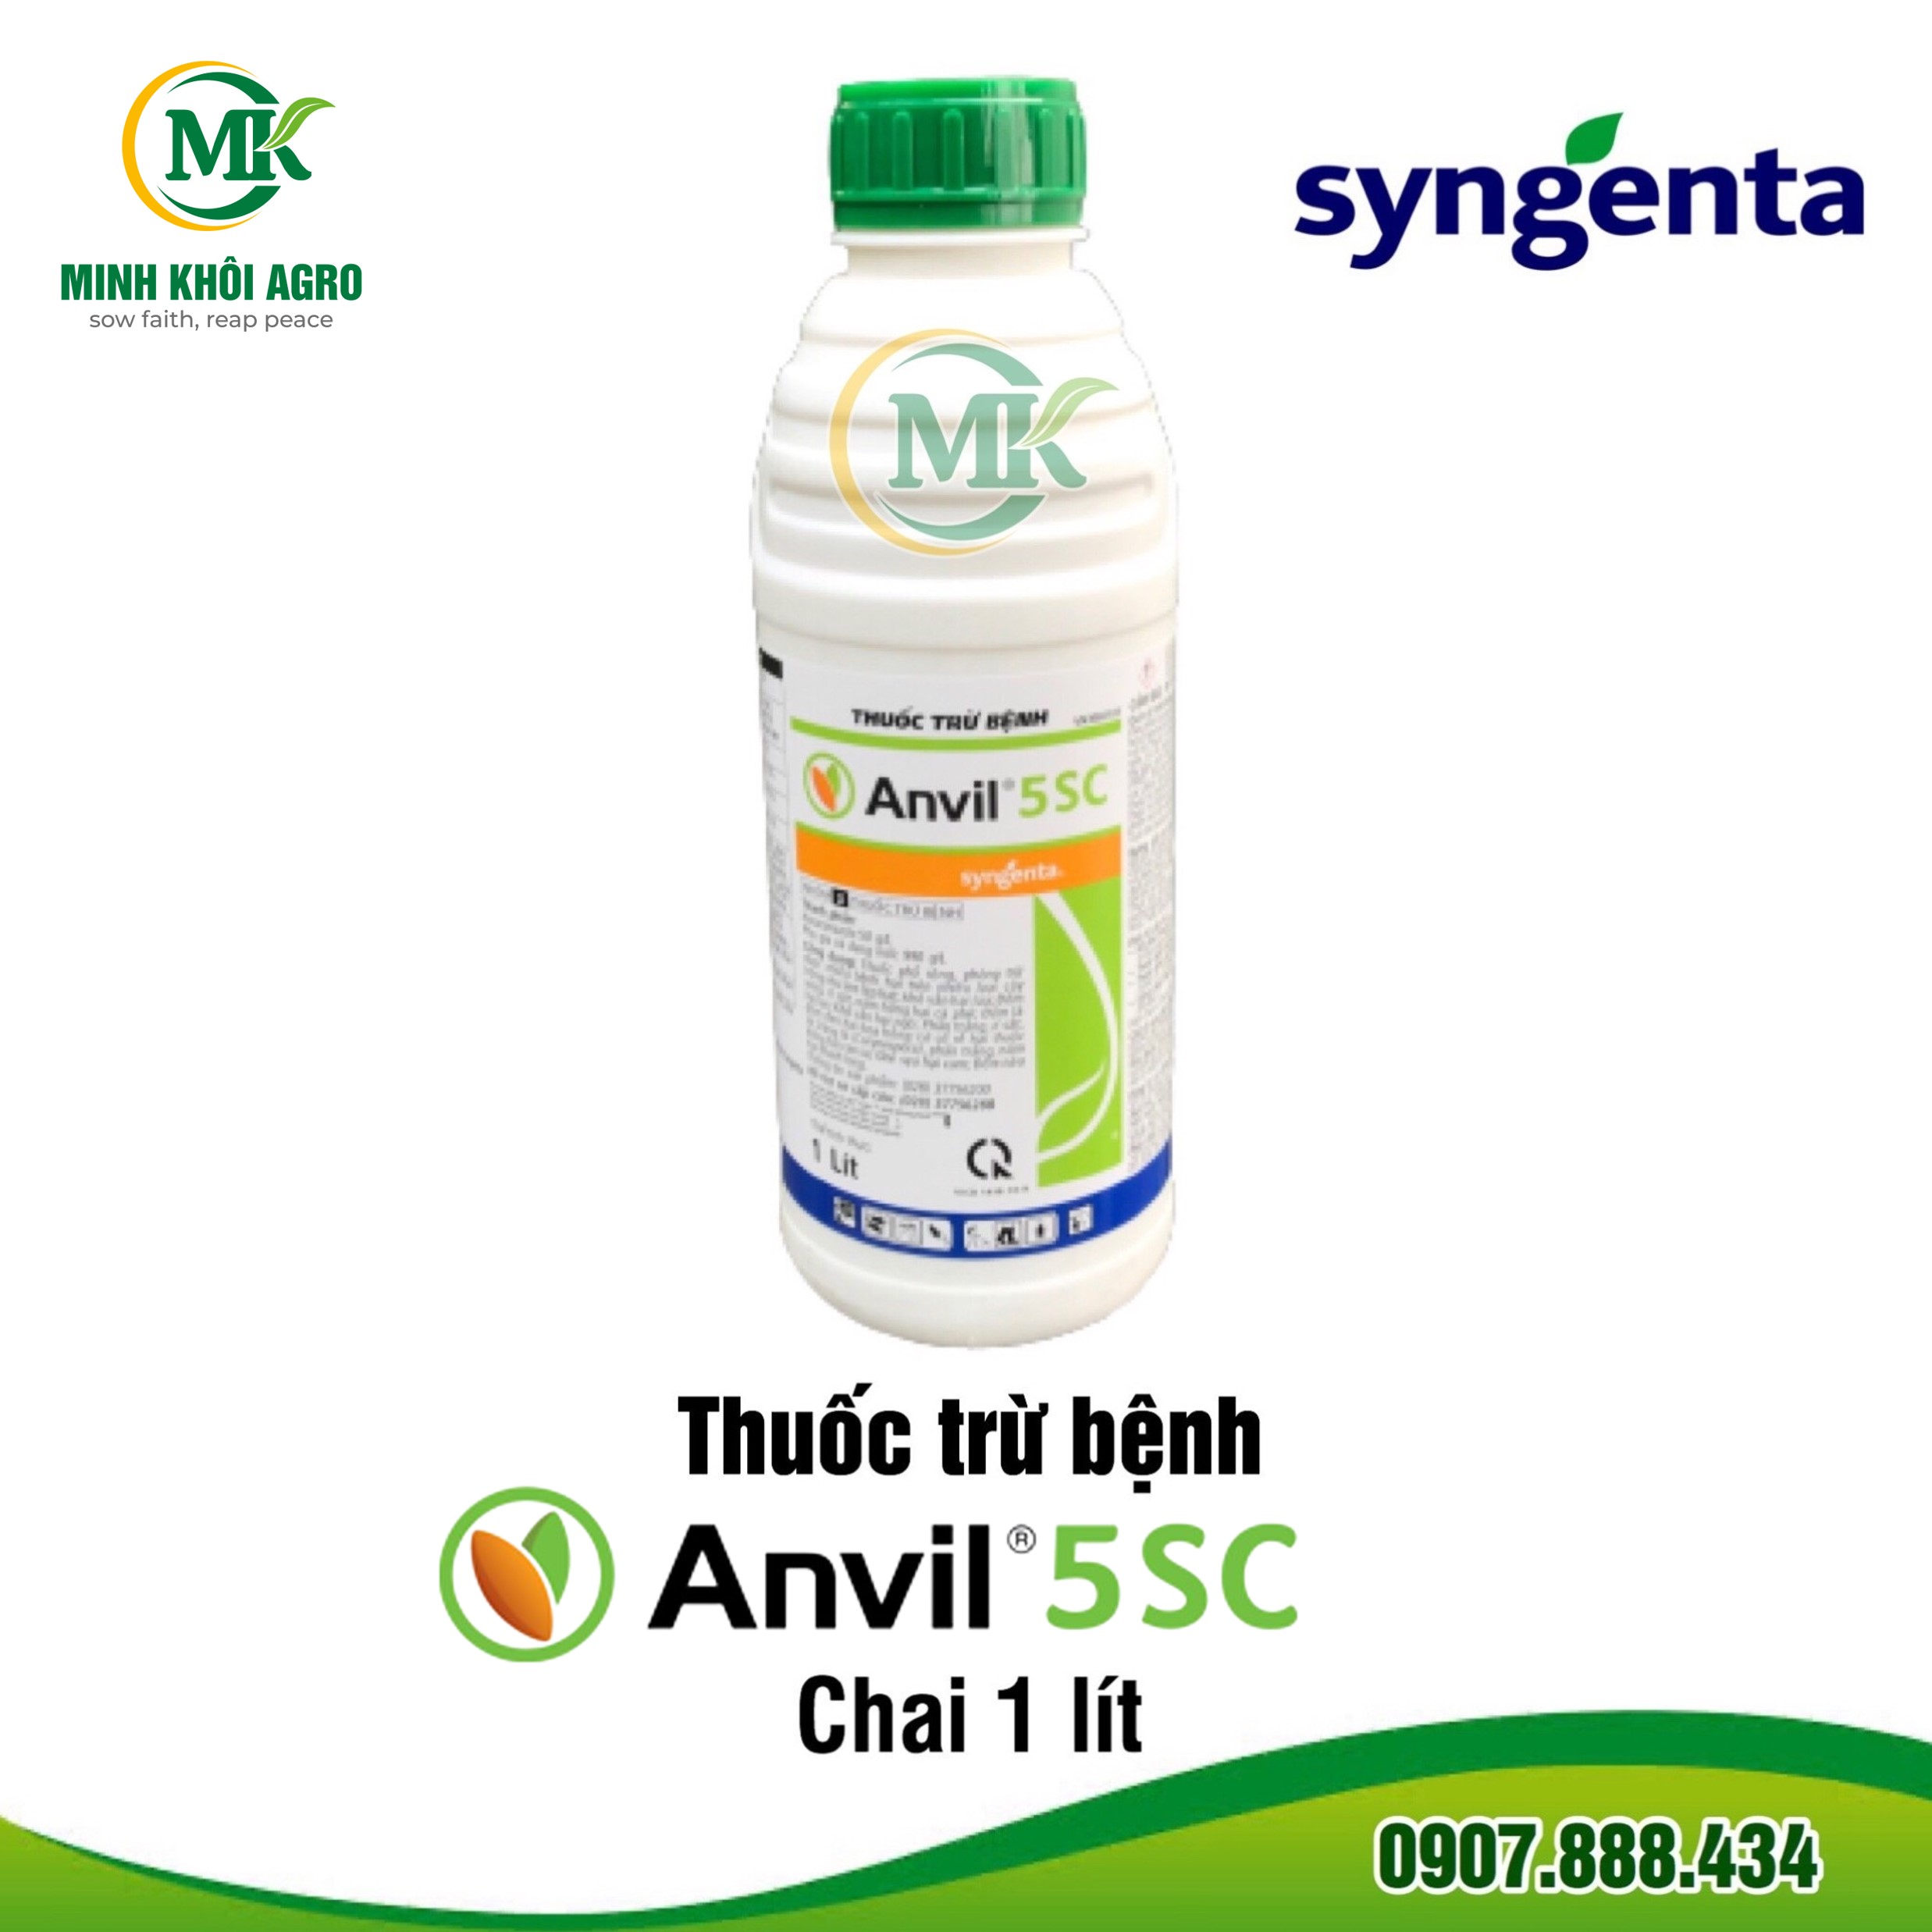 Thuốc trừ bệnh Anvil 5SC (chính hãng Syngenta) - Chai 1 lít